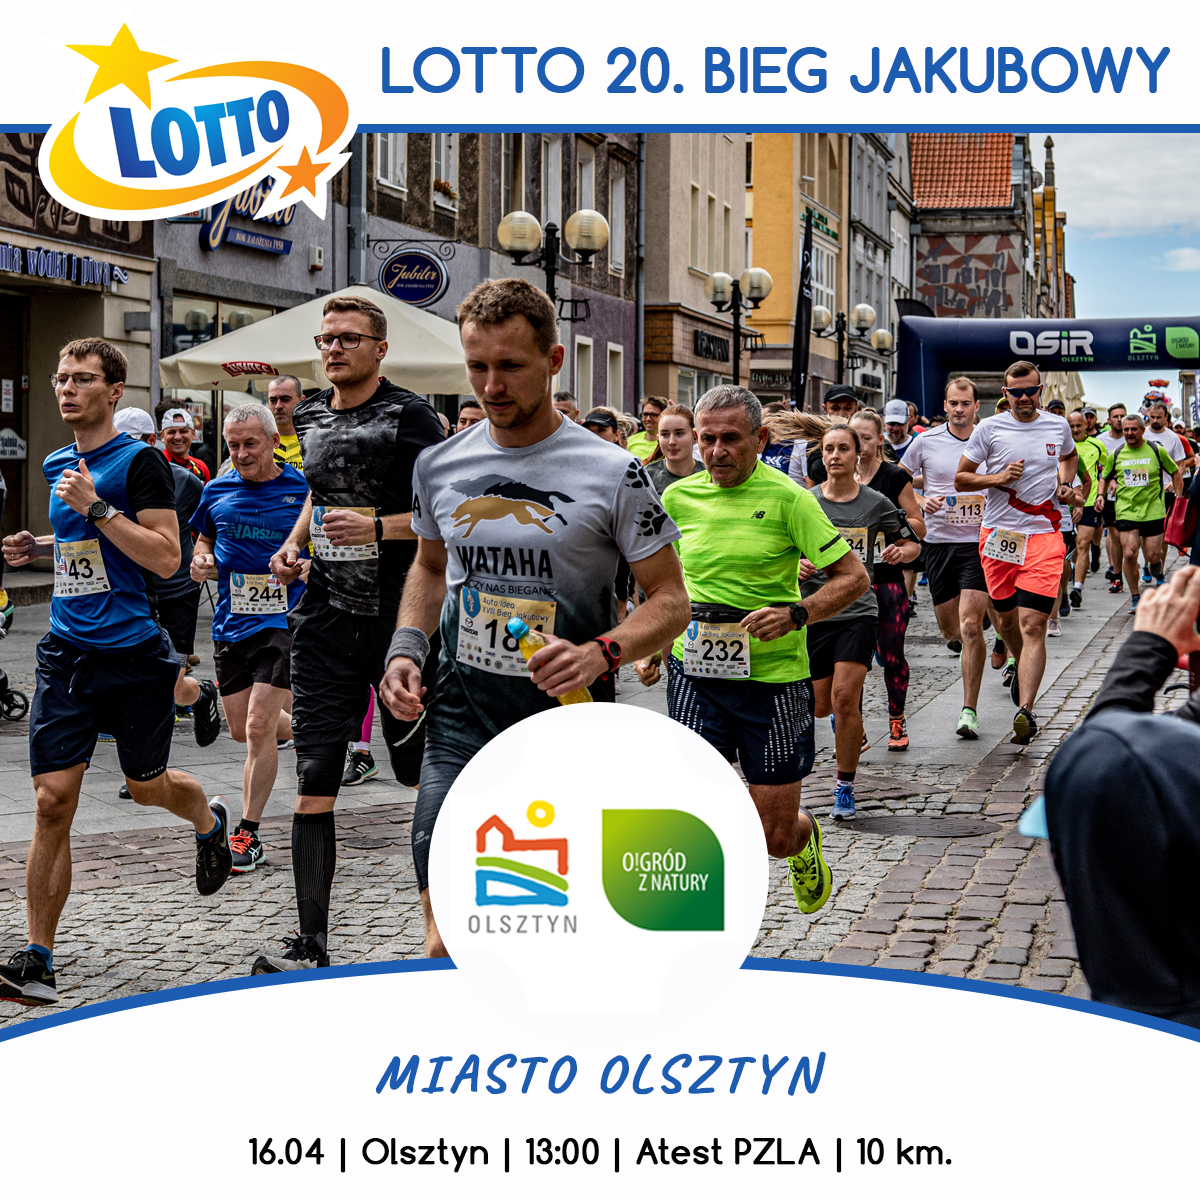 Plakat zapraszający w niedzielę 16 kwietnia 2023 r. do Olsztyna na 20. edycję Biegu Jakubowego Olsztyn 2023.